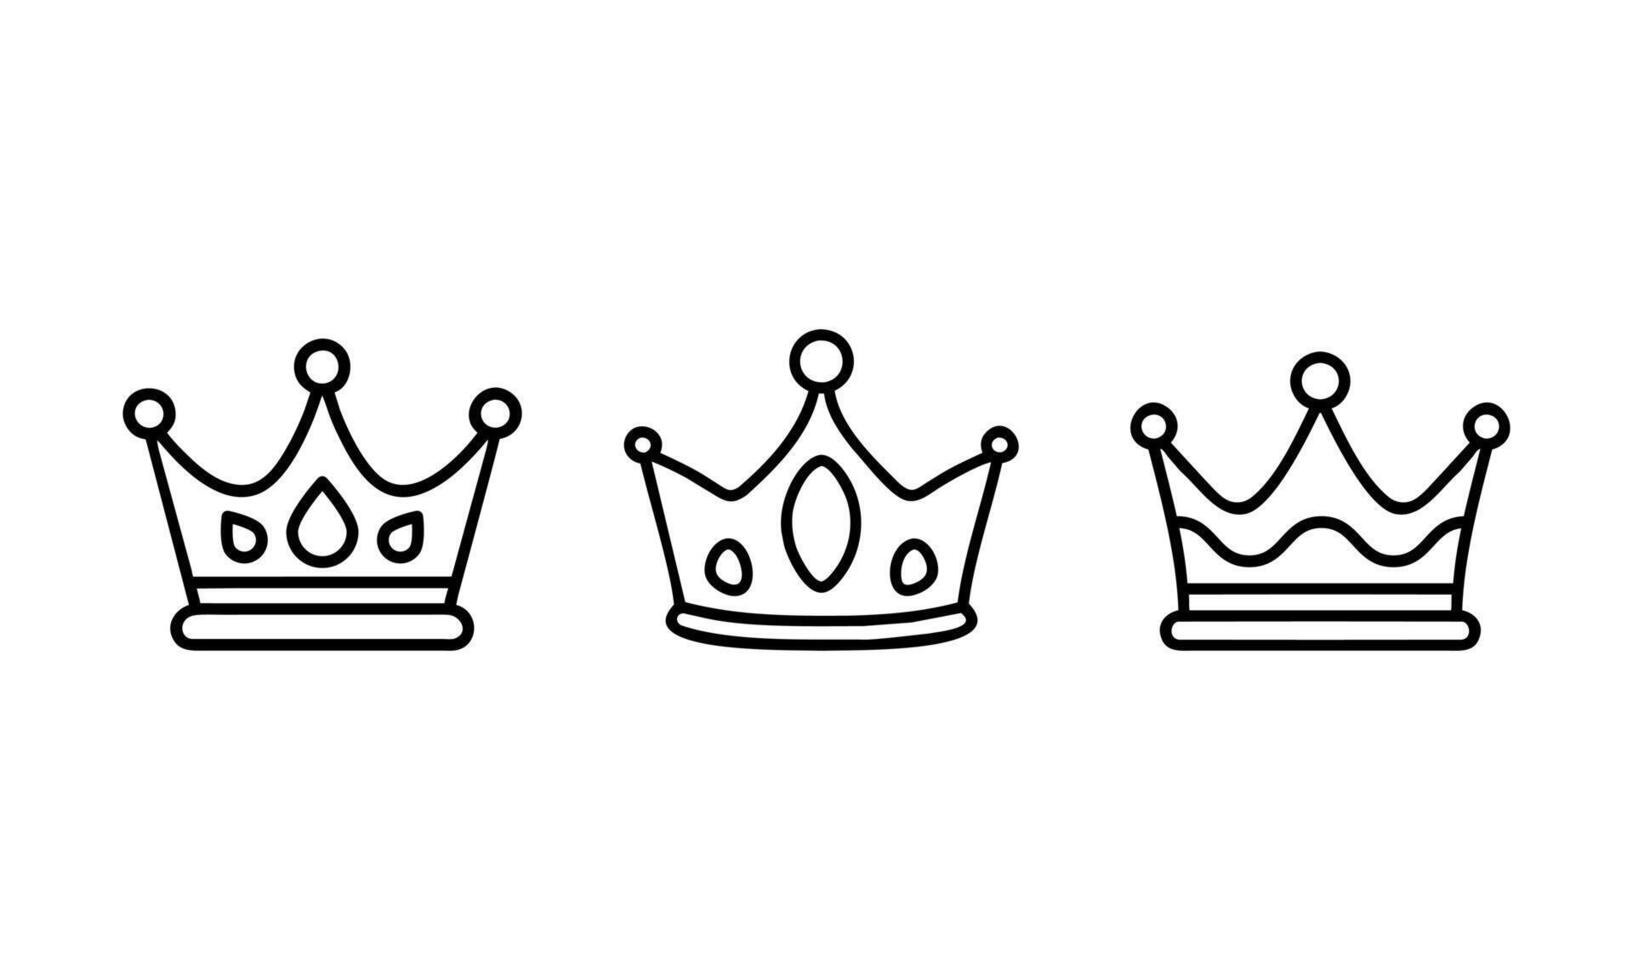 uppsättning av svart krona ikoner. samling av krona utmärkelser för vinnare, champinjoner, ledarskap. vektor element för logotyp, logotyp, spel, hotell, app design. kunglig kung, drottning, prinsessa krona.